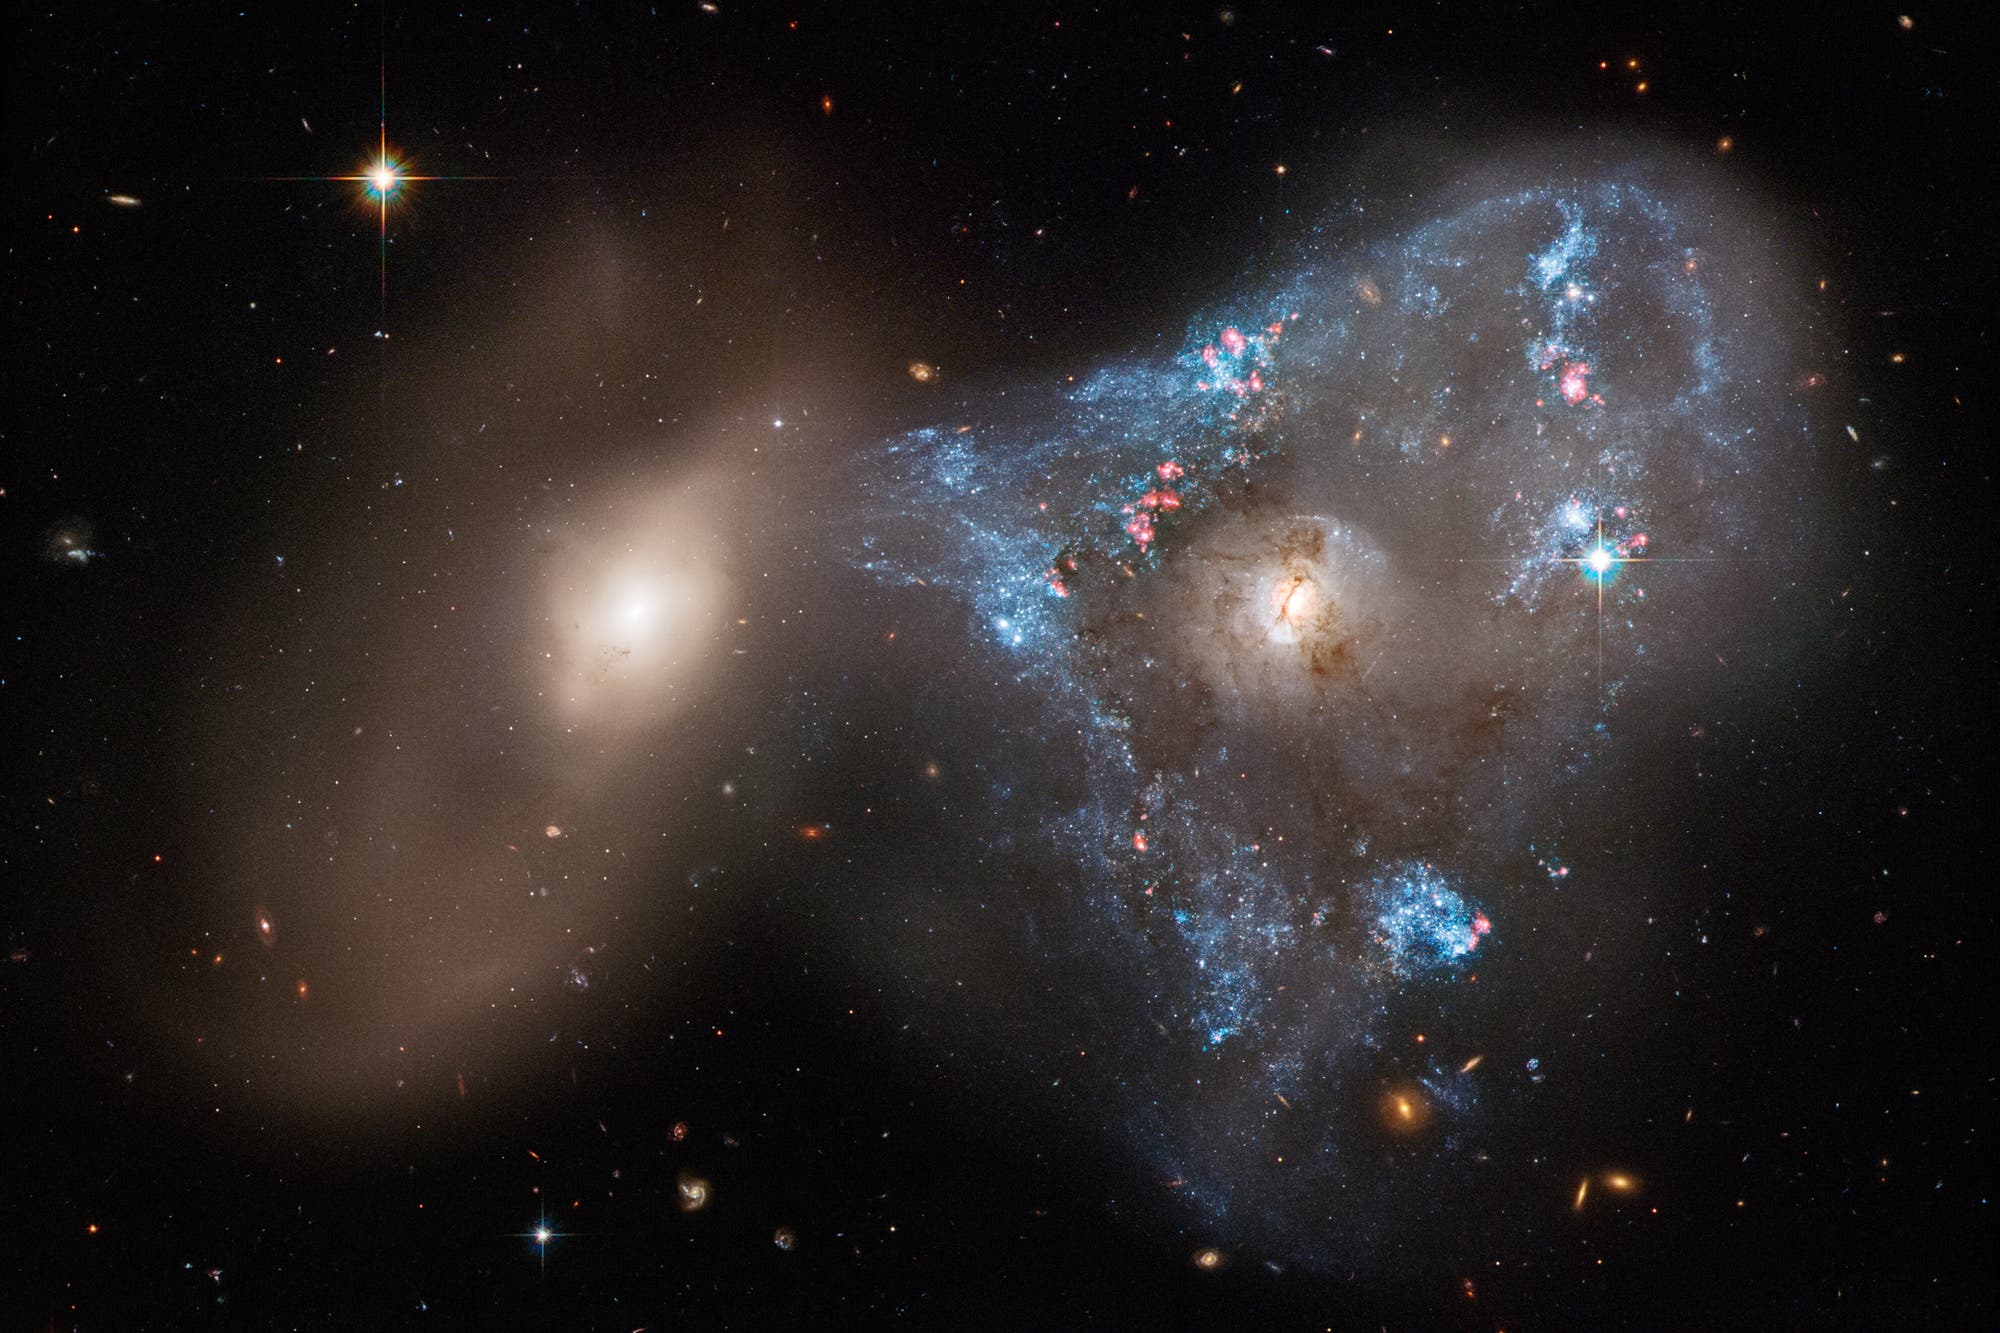 Eine spektakuläre Frontalkollision zwischen zwei Galaxien hat eine ungewöhnliche dreieckige Sterngeburt ausgelöst, die auf einem neuen Bild des Hubble-Weltraumteleskops der NASA zu sehen ist.